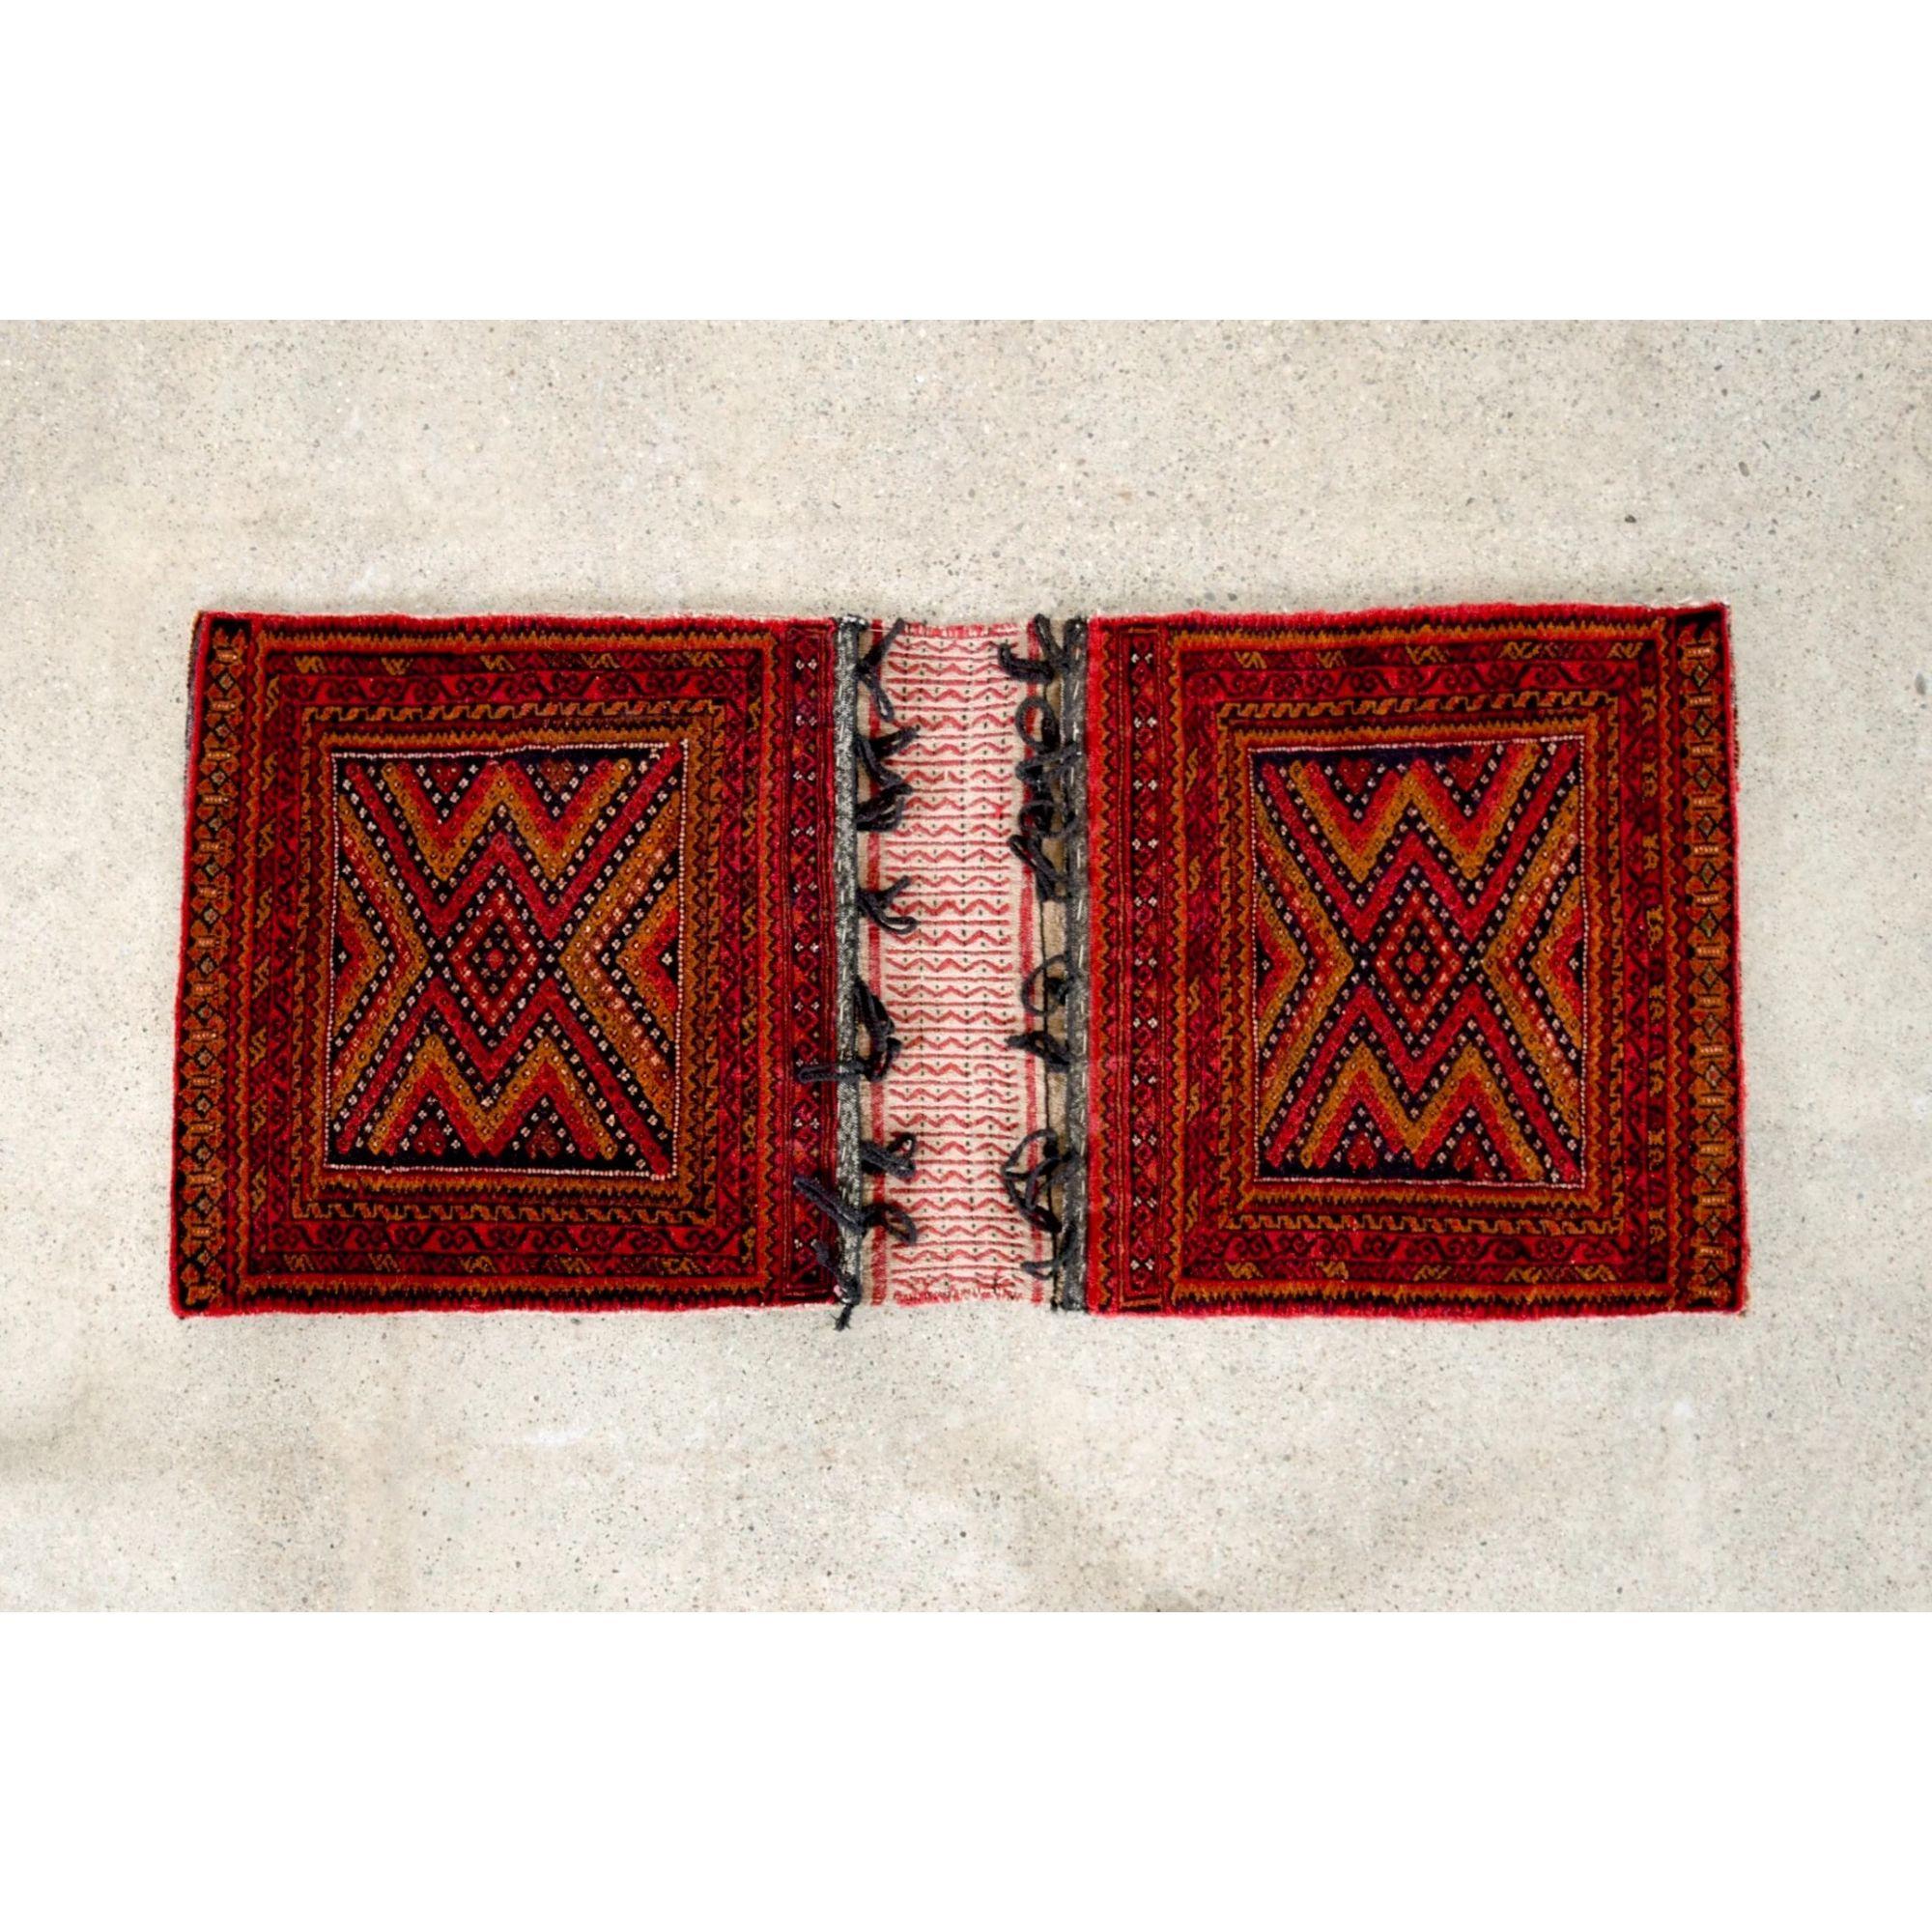 Dieser authentische Vintage-Satteltaschenteppich der Belutschen stammt aus einer Region in der Nähe des heutigen Afghanistan und Pakistan. Dieser kleine, fachmännisch handgefertigte Teppich ist durch flach gewebte Kelims mit Aufhängeschlaufen